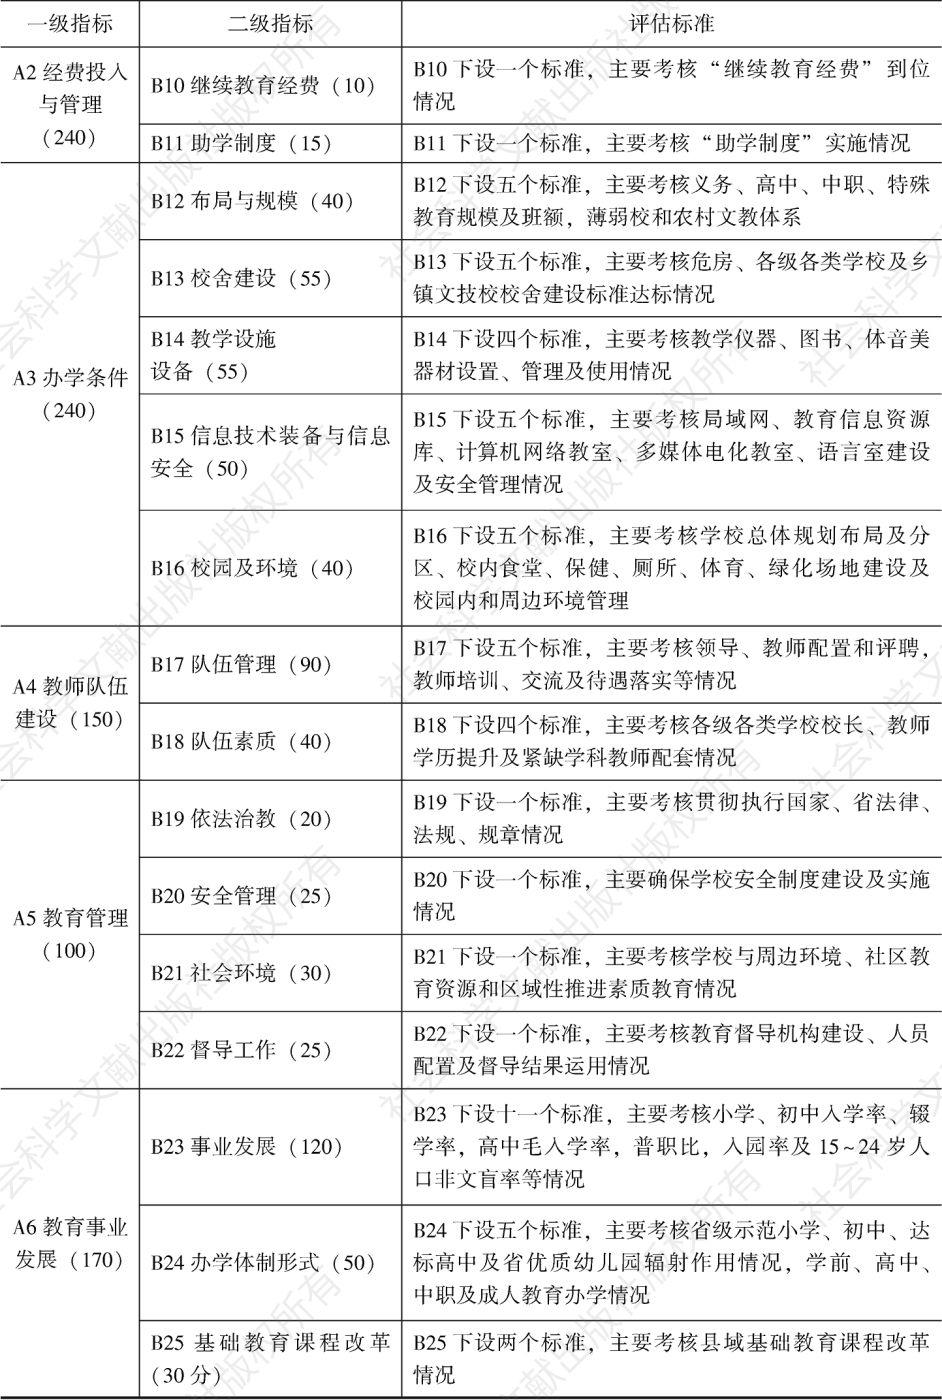 表2-2 2004年福建省县级人民政府教育工作督导评估标准概况-续表